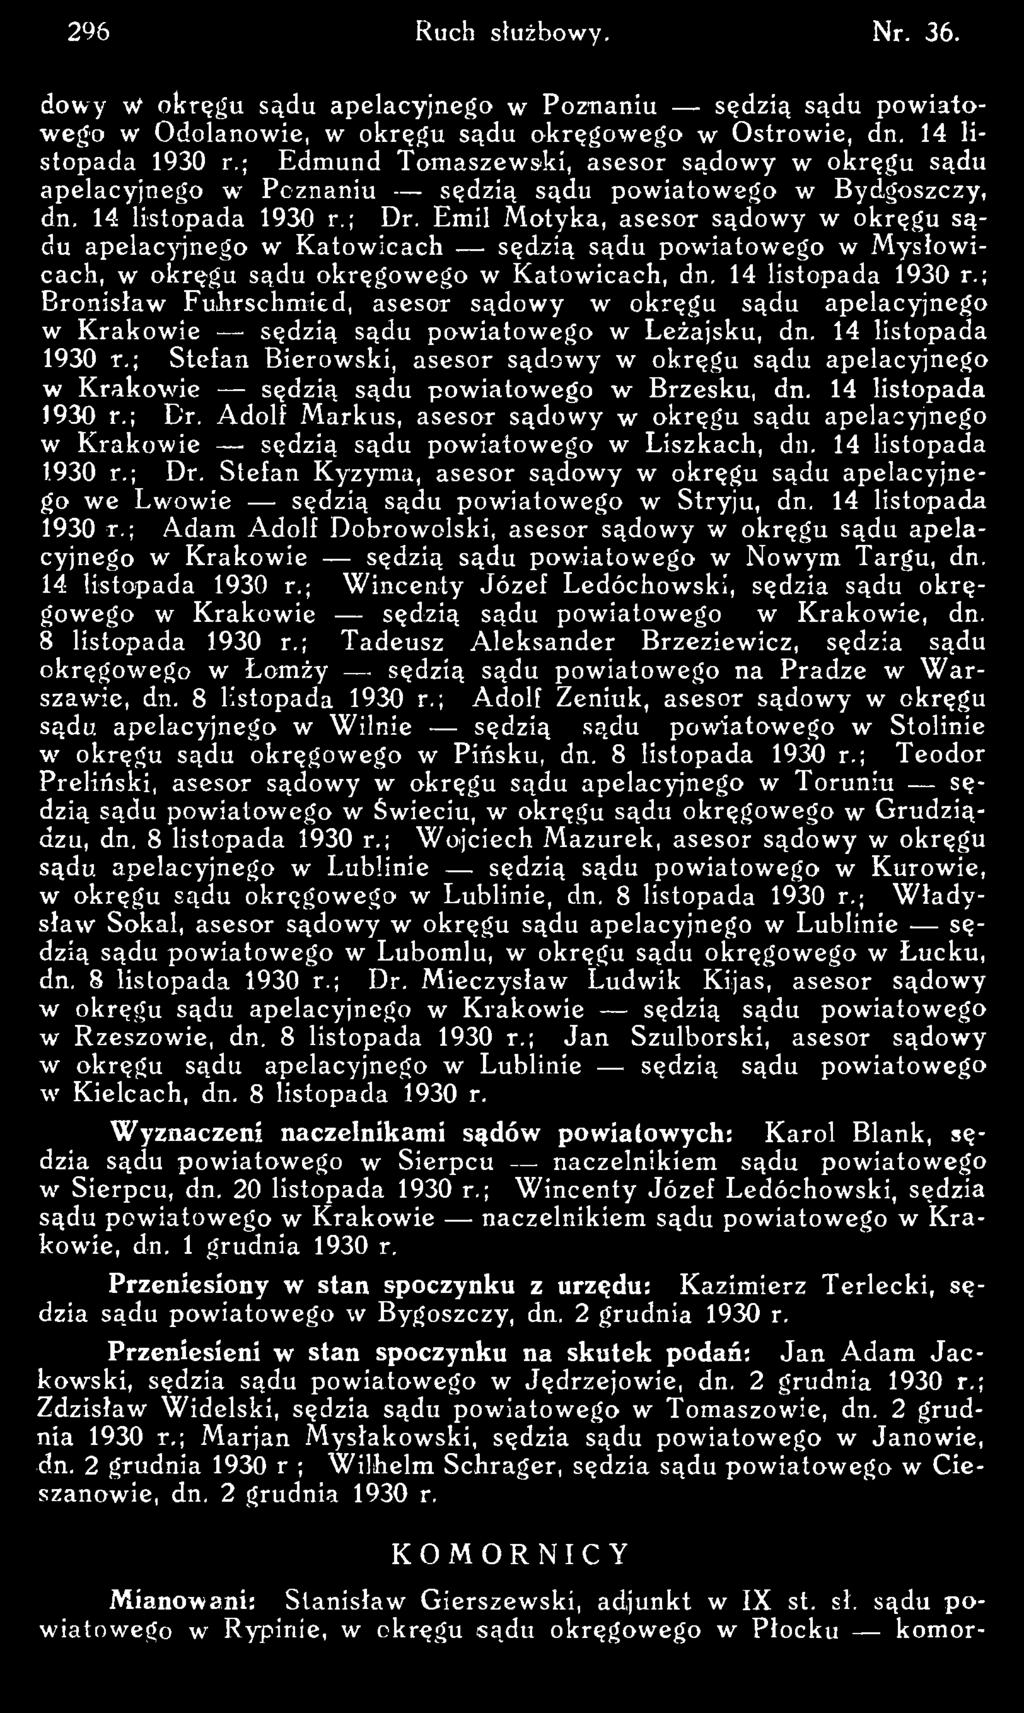 ; Stefan Bierowski, asesor sądowy w okręgu sądu apelacyjnego w Krakowie sędzią sądu pow iatow ego w Brzesku, dn. 14 listopada 1930 r.; Dr.